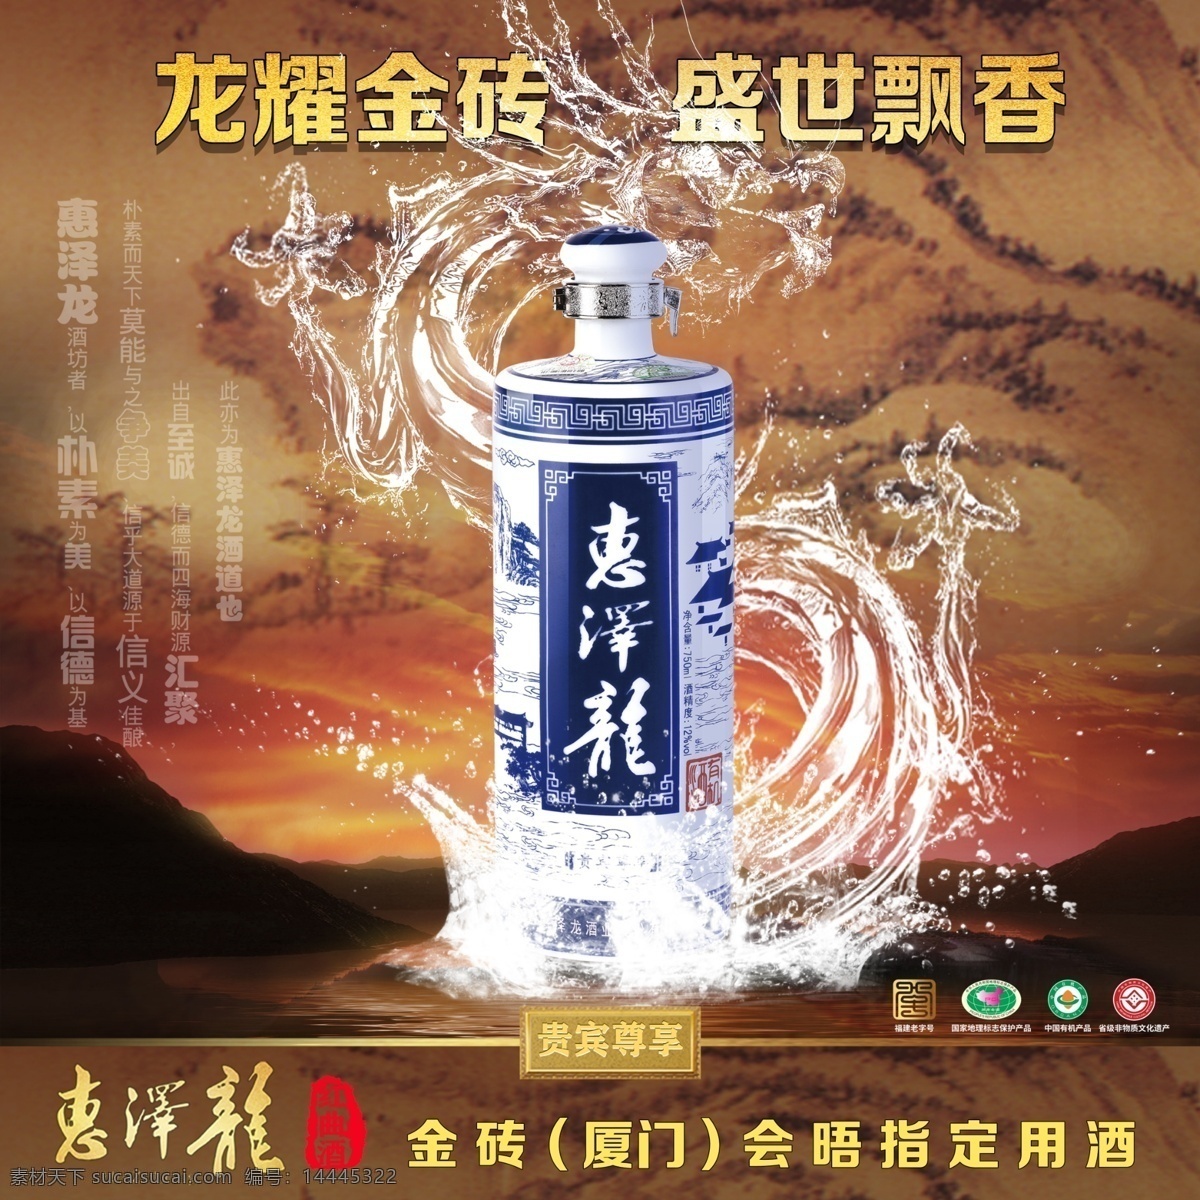 水龙 中国画 酒广告图片 酒广告 山水画